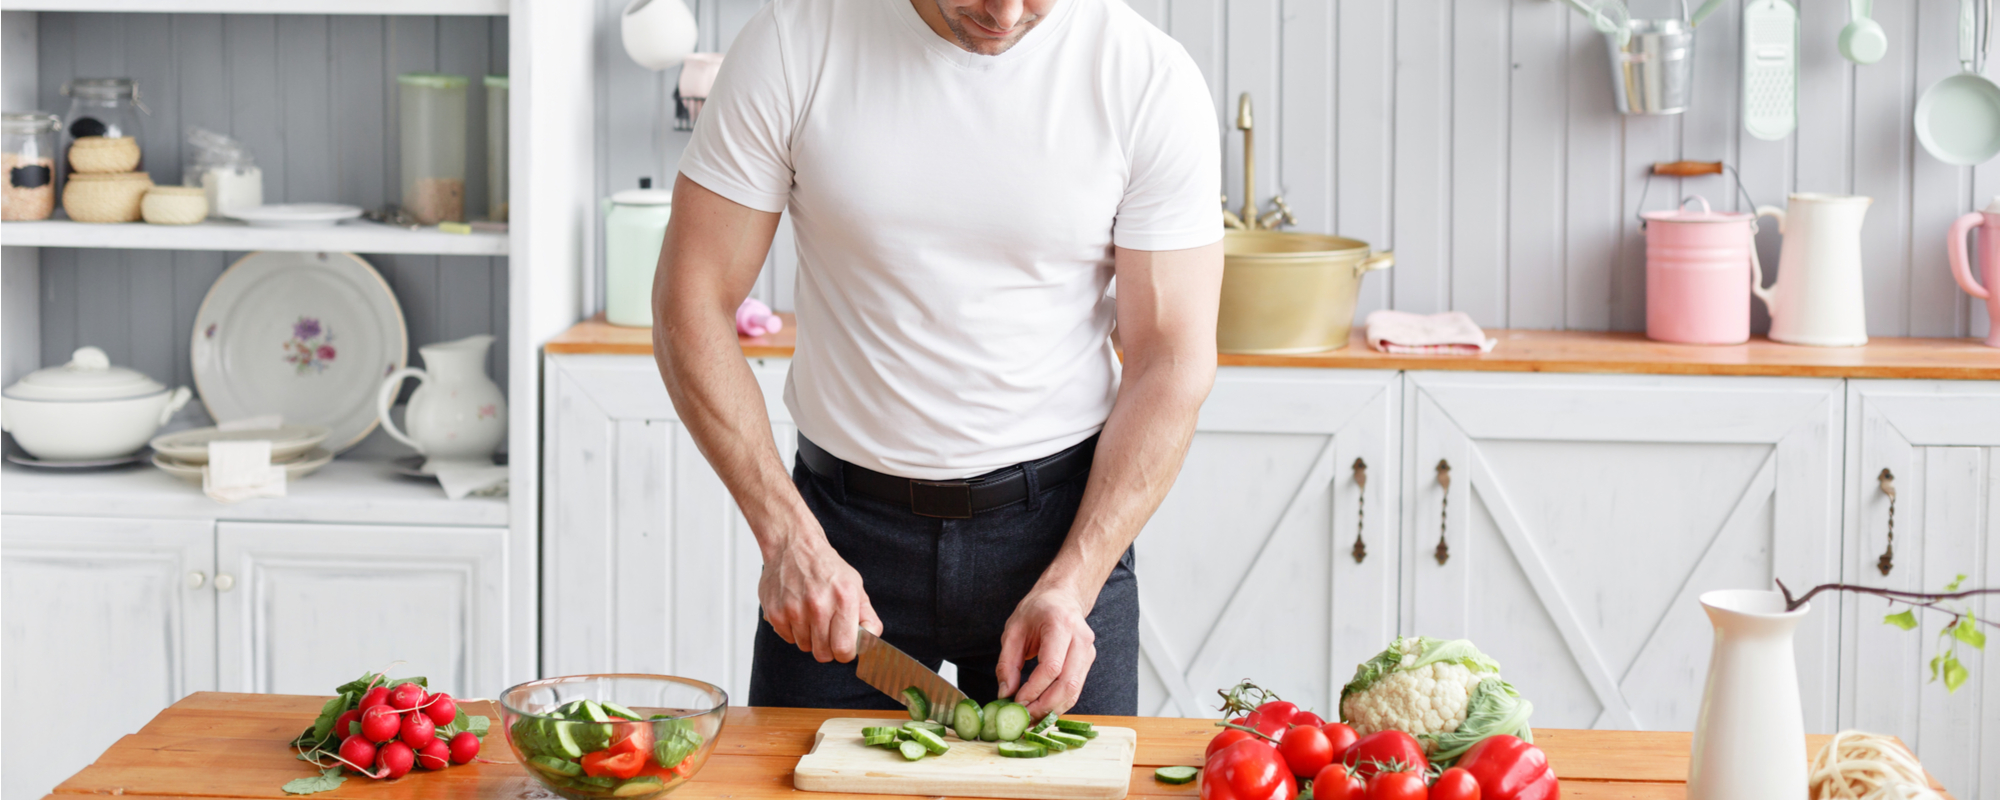 50代男性が健康であり続けるために効果的なダイエット 男のためのダイエットマニュアル